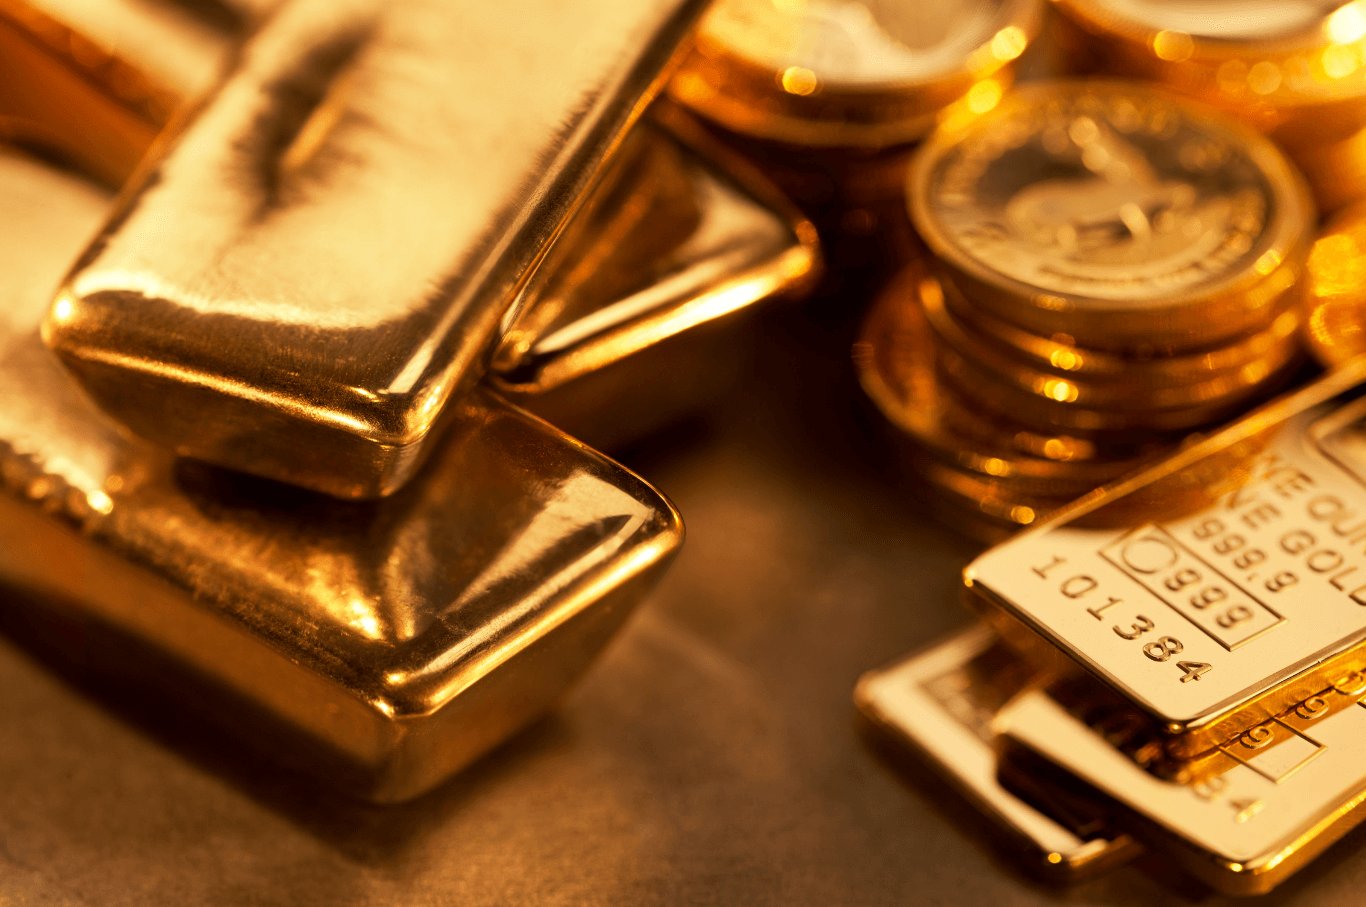 ทองคำเม็ดเล็ก มาแรงวัยรุ่นจีนแห่ซื้อทอง ท่ามกลางเงินเฟ้อในจีน